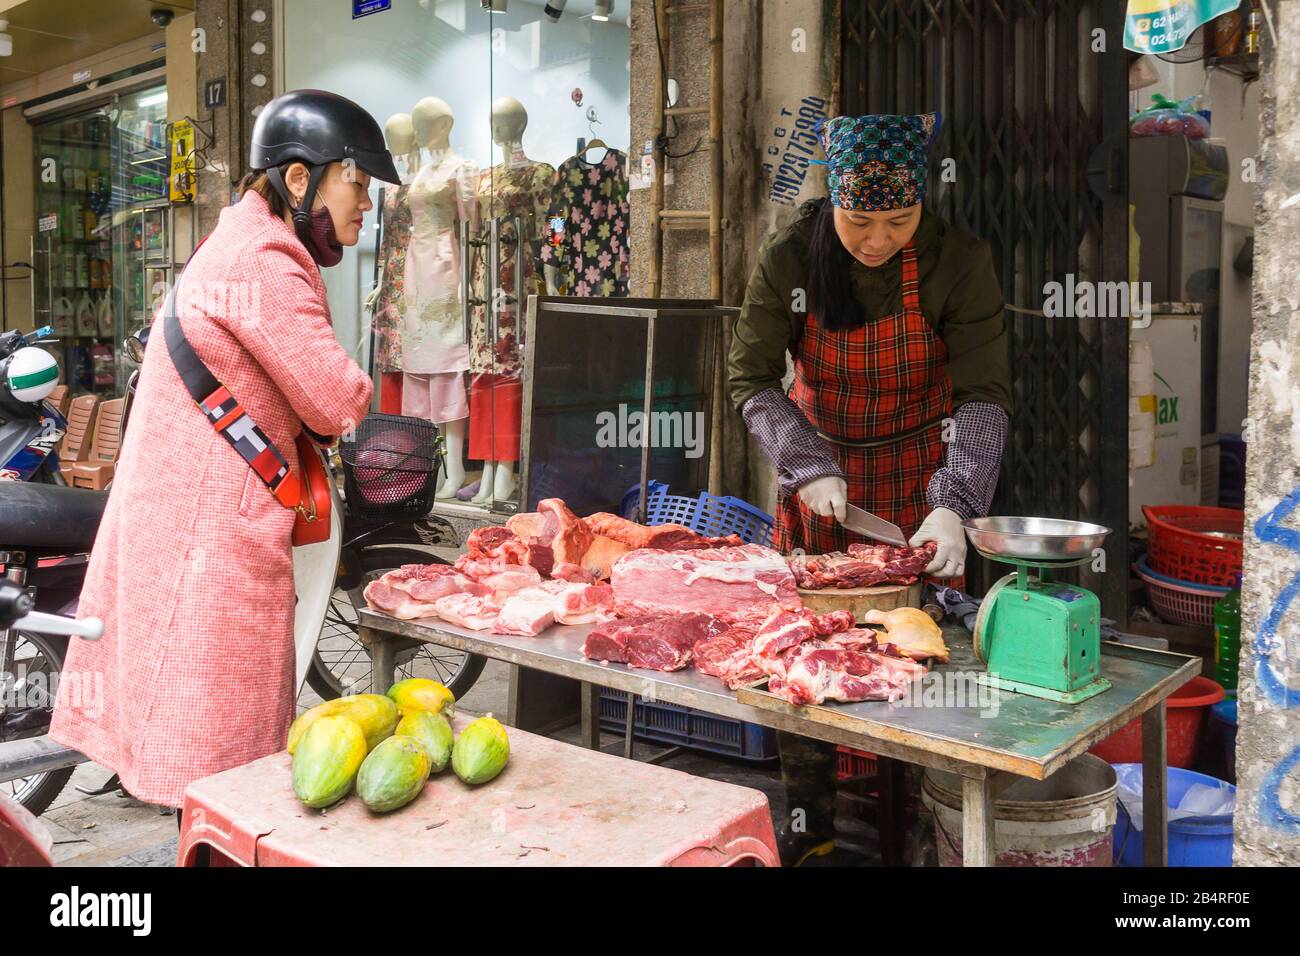 Scène de rue de Hanoi - une femme achetant de la viande crue dans la rue à Hanoi, Vietnam, Asie du Sud-est. Banque D'Images